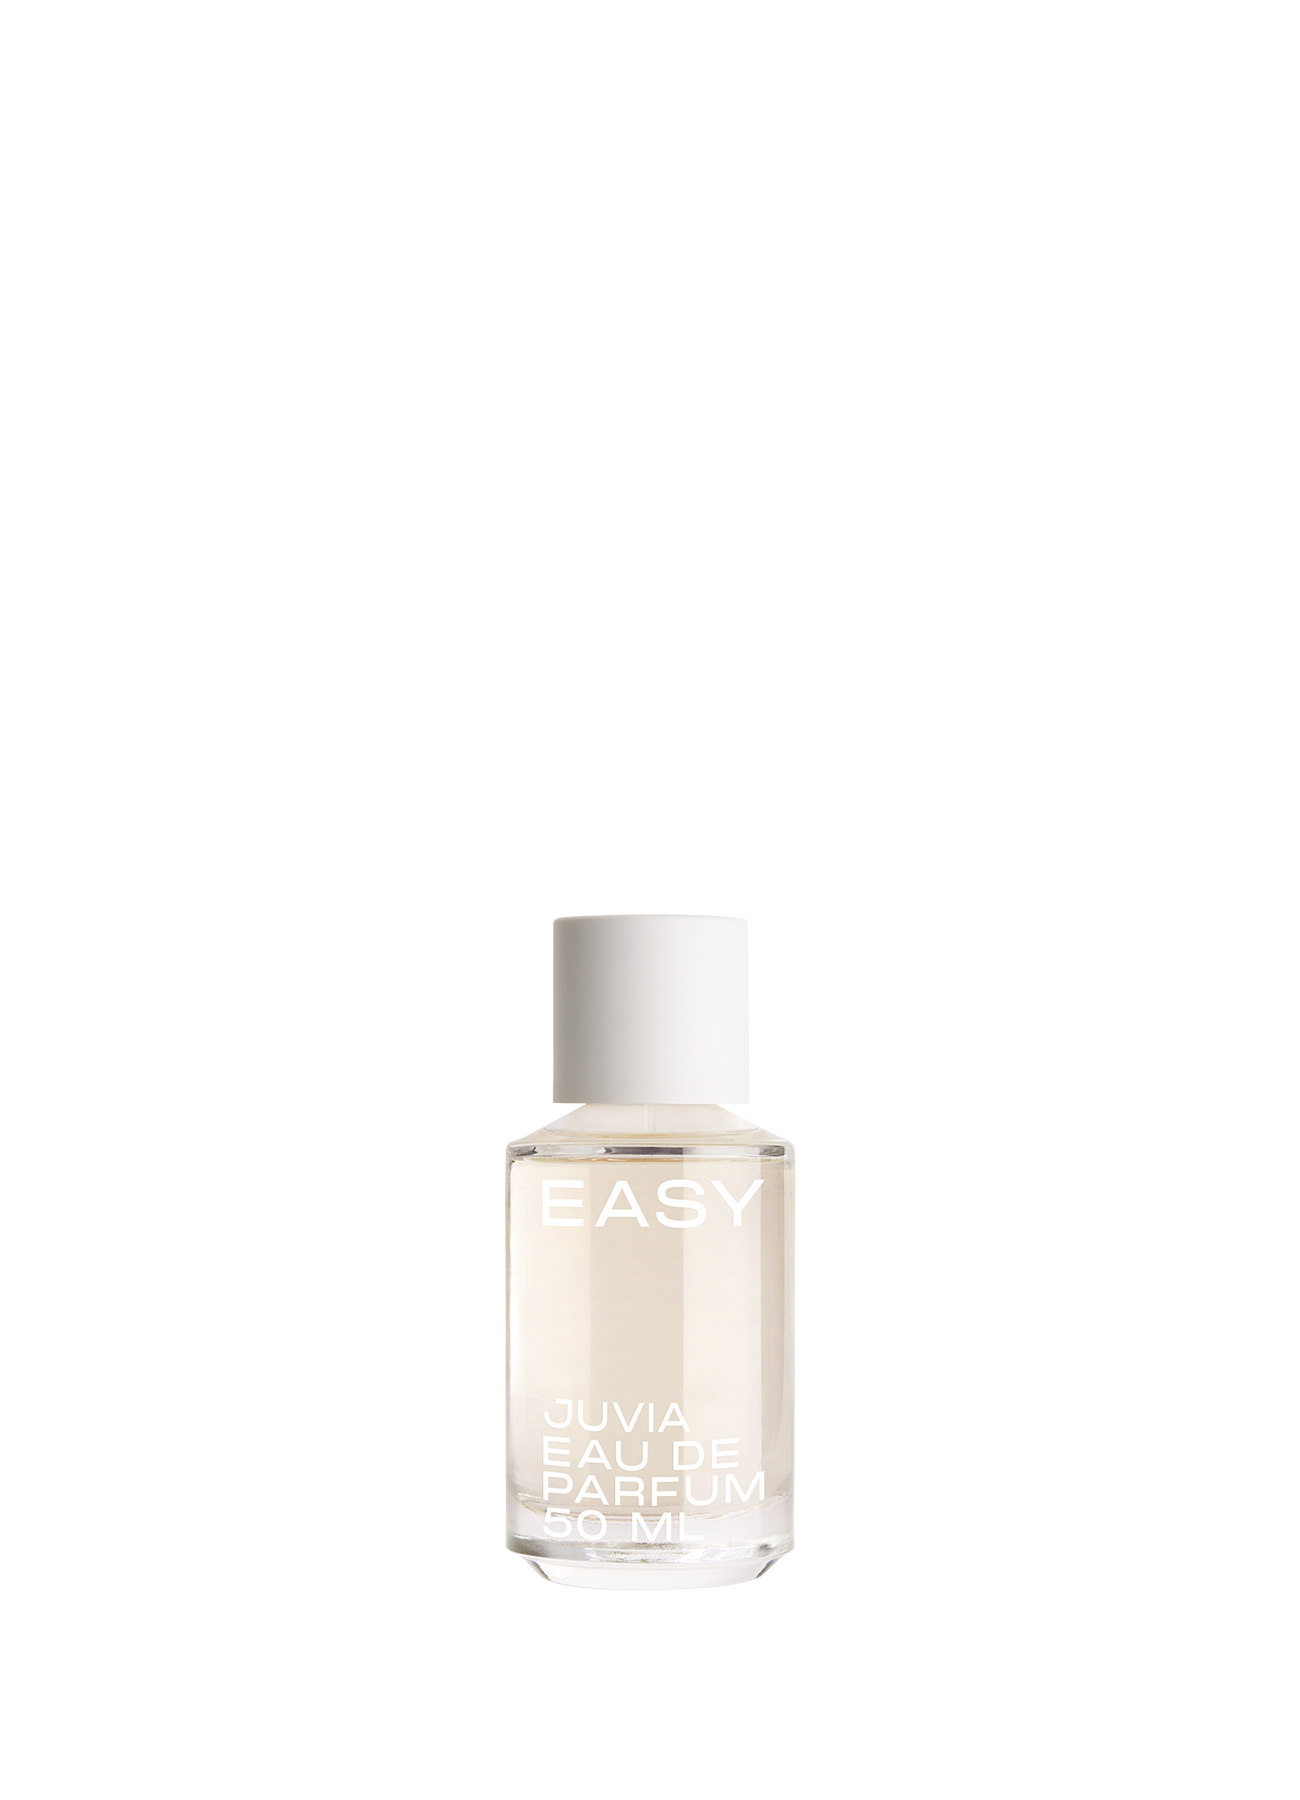 EASY for her - Eau de Parfum 50 ml